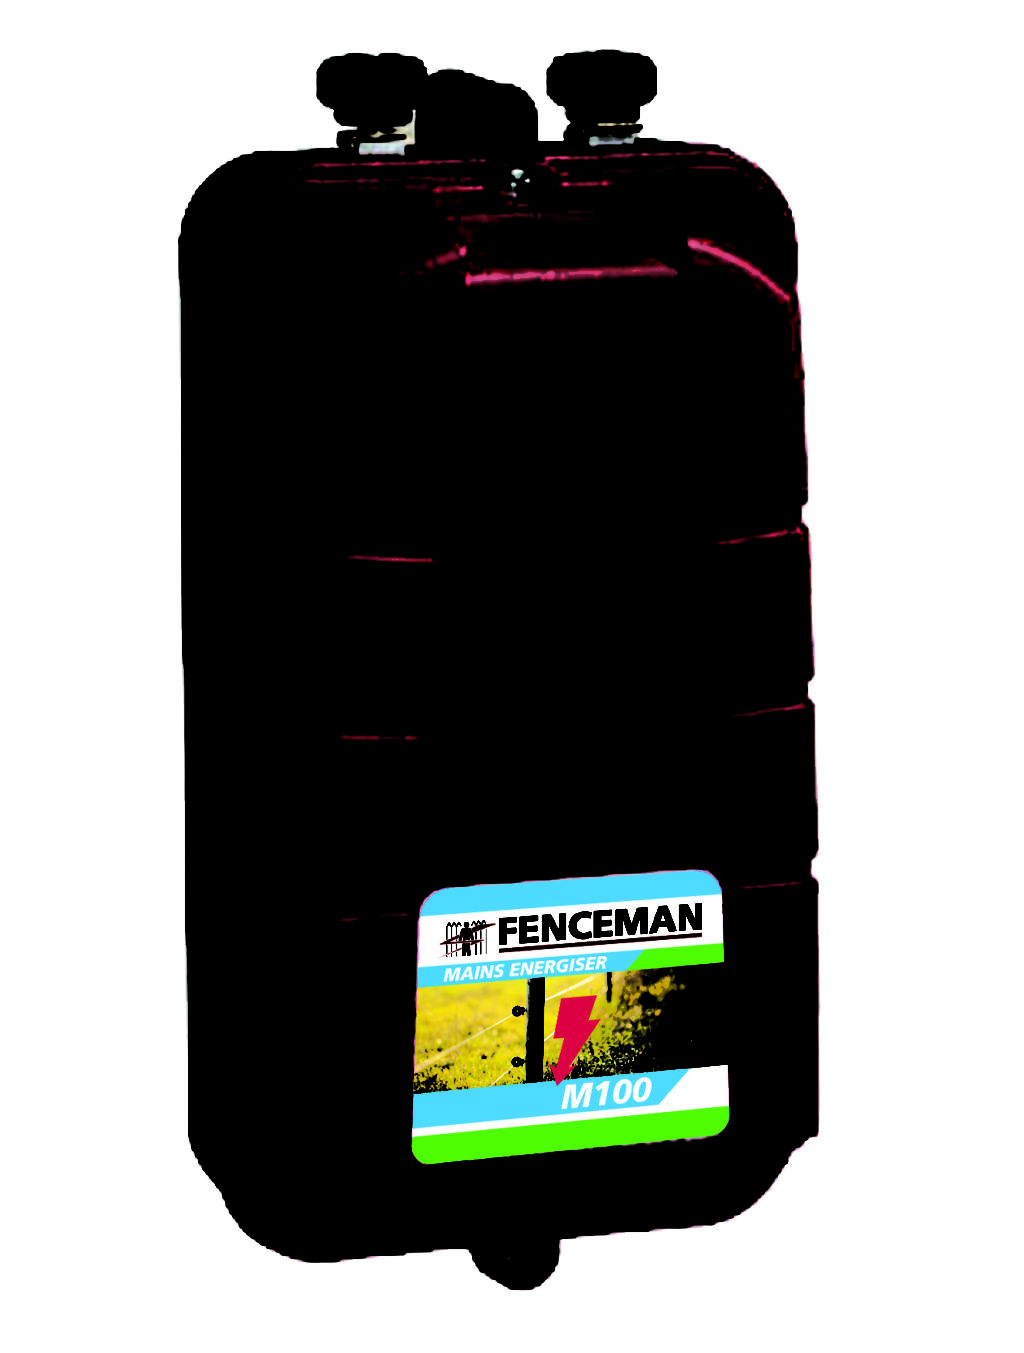 Fenceman Energiser M100 Mains 230V 1.2J (A)